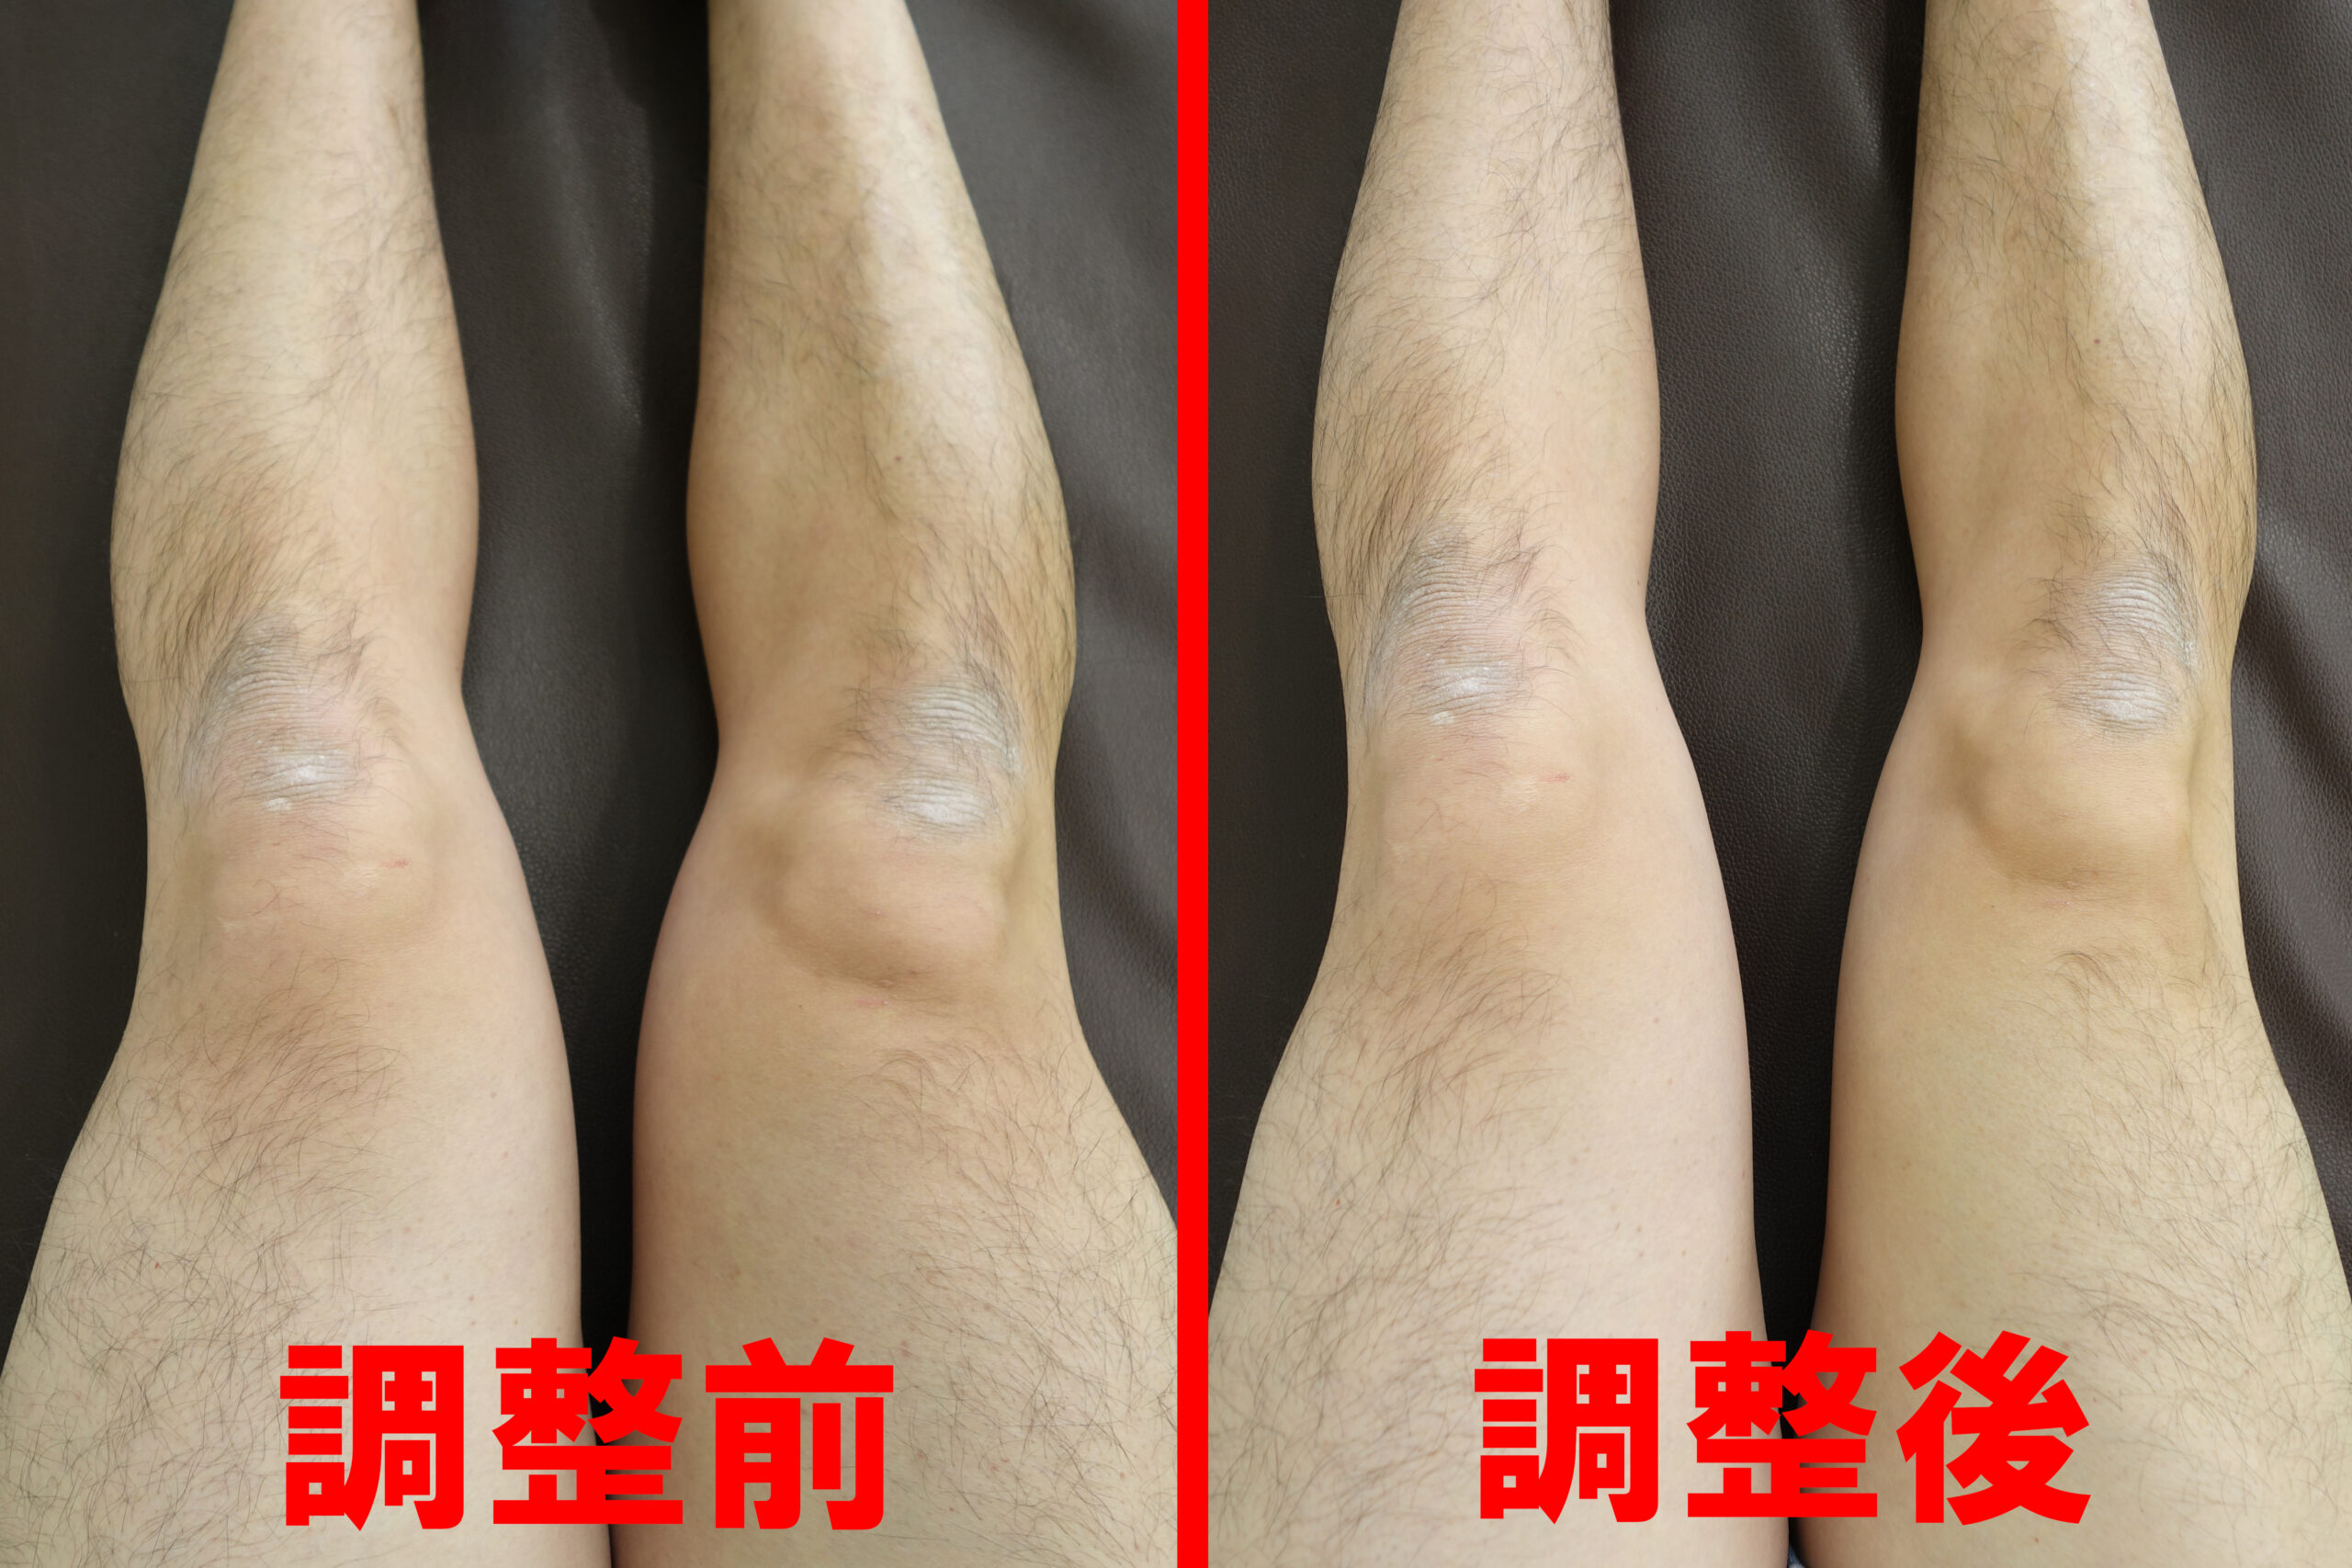 膝周りの循環を改善した前後の画像を比較